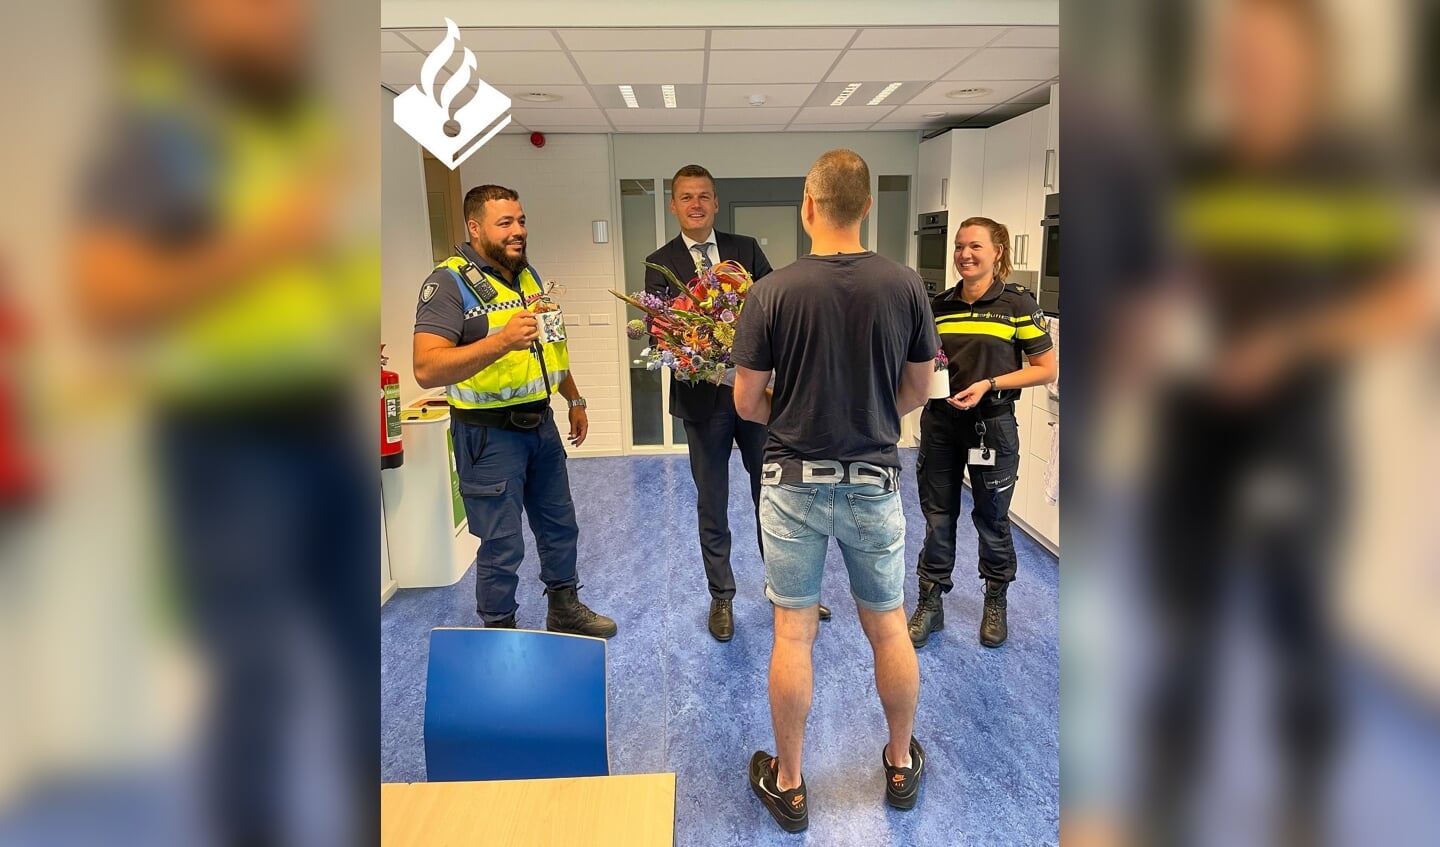 De teamchef van de lokale politie heeft samen met burgemeester Nieuwenhuis de inwoner bedankt voor zijn hulp. (foto: politie)